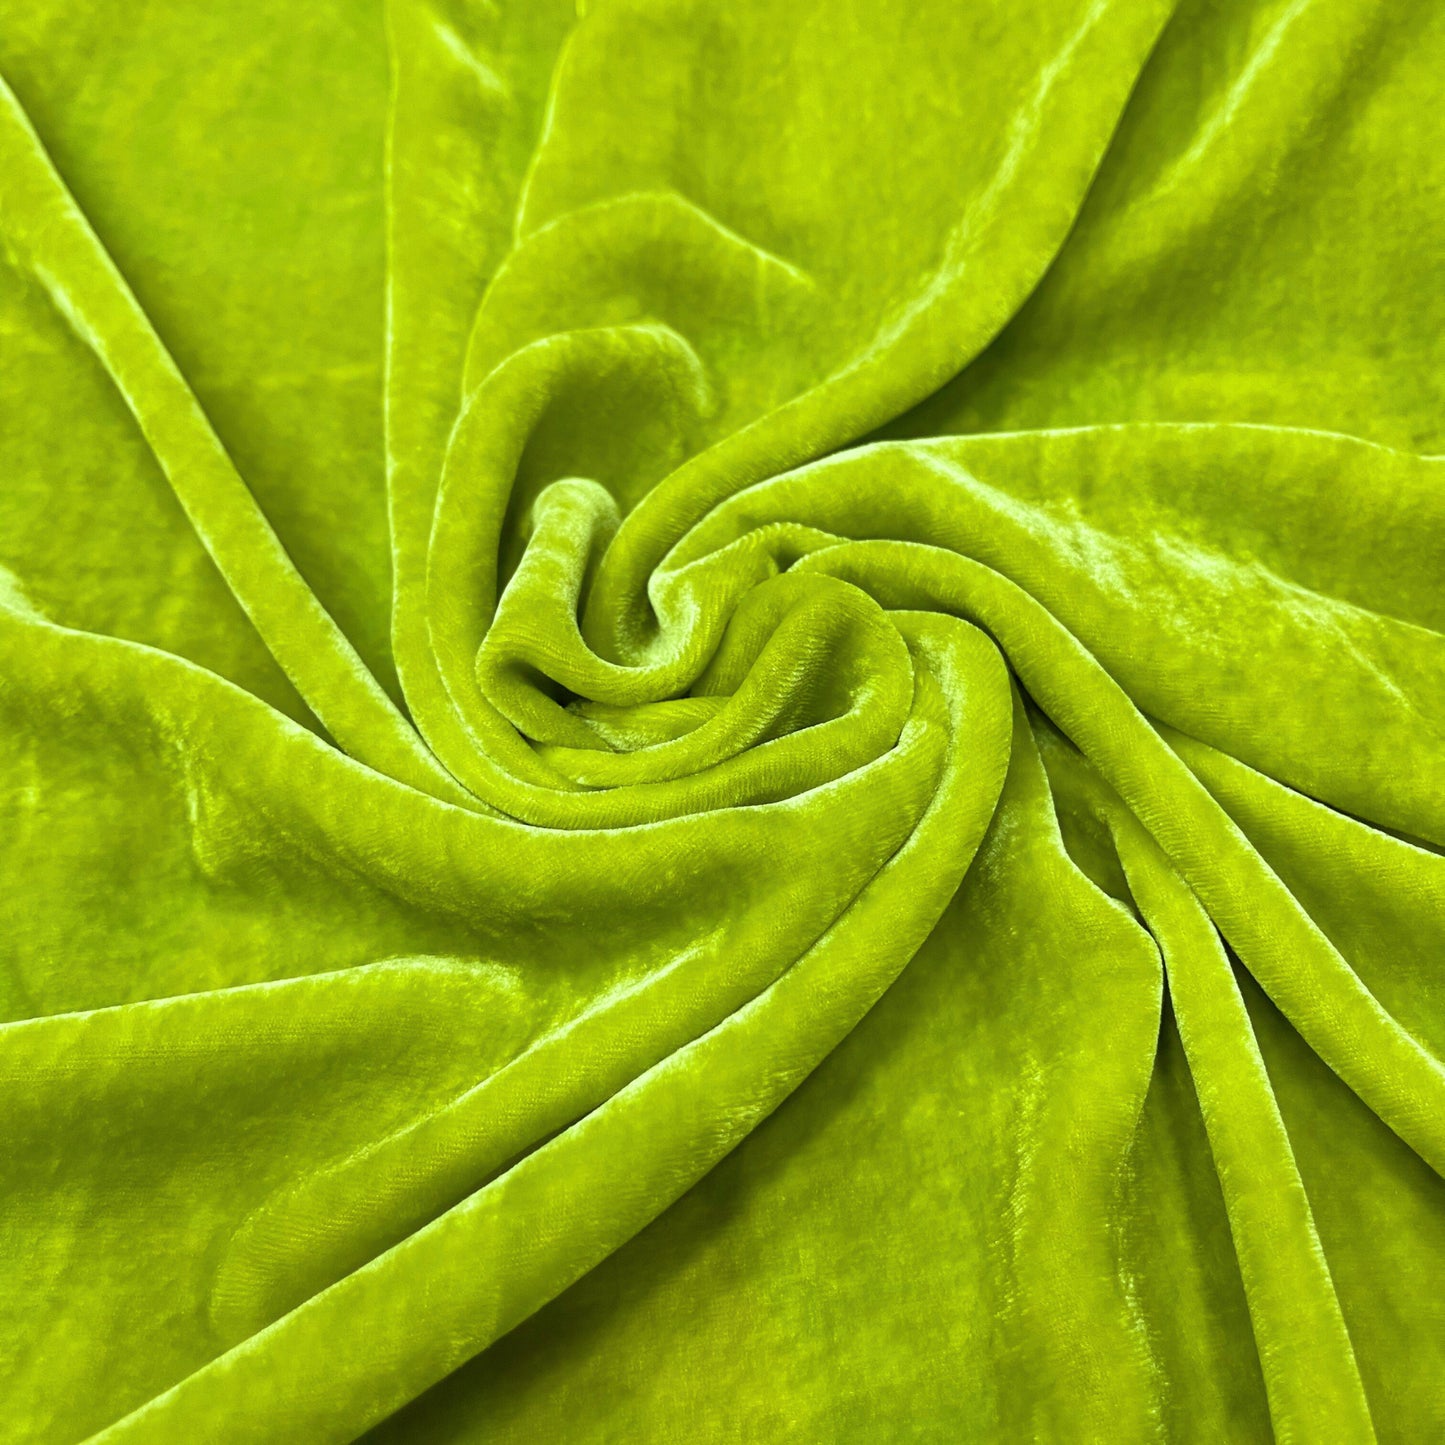 100% Pure Mulberry Silk Velvet Fabric by the yard – Luxury Silk Velvet for Dress, Skirt, High End Garment – Gift for women – Lime color velvet – Silk for sewing